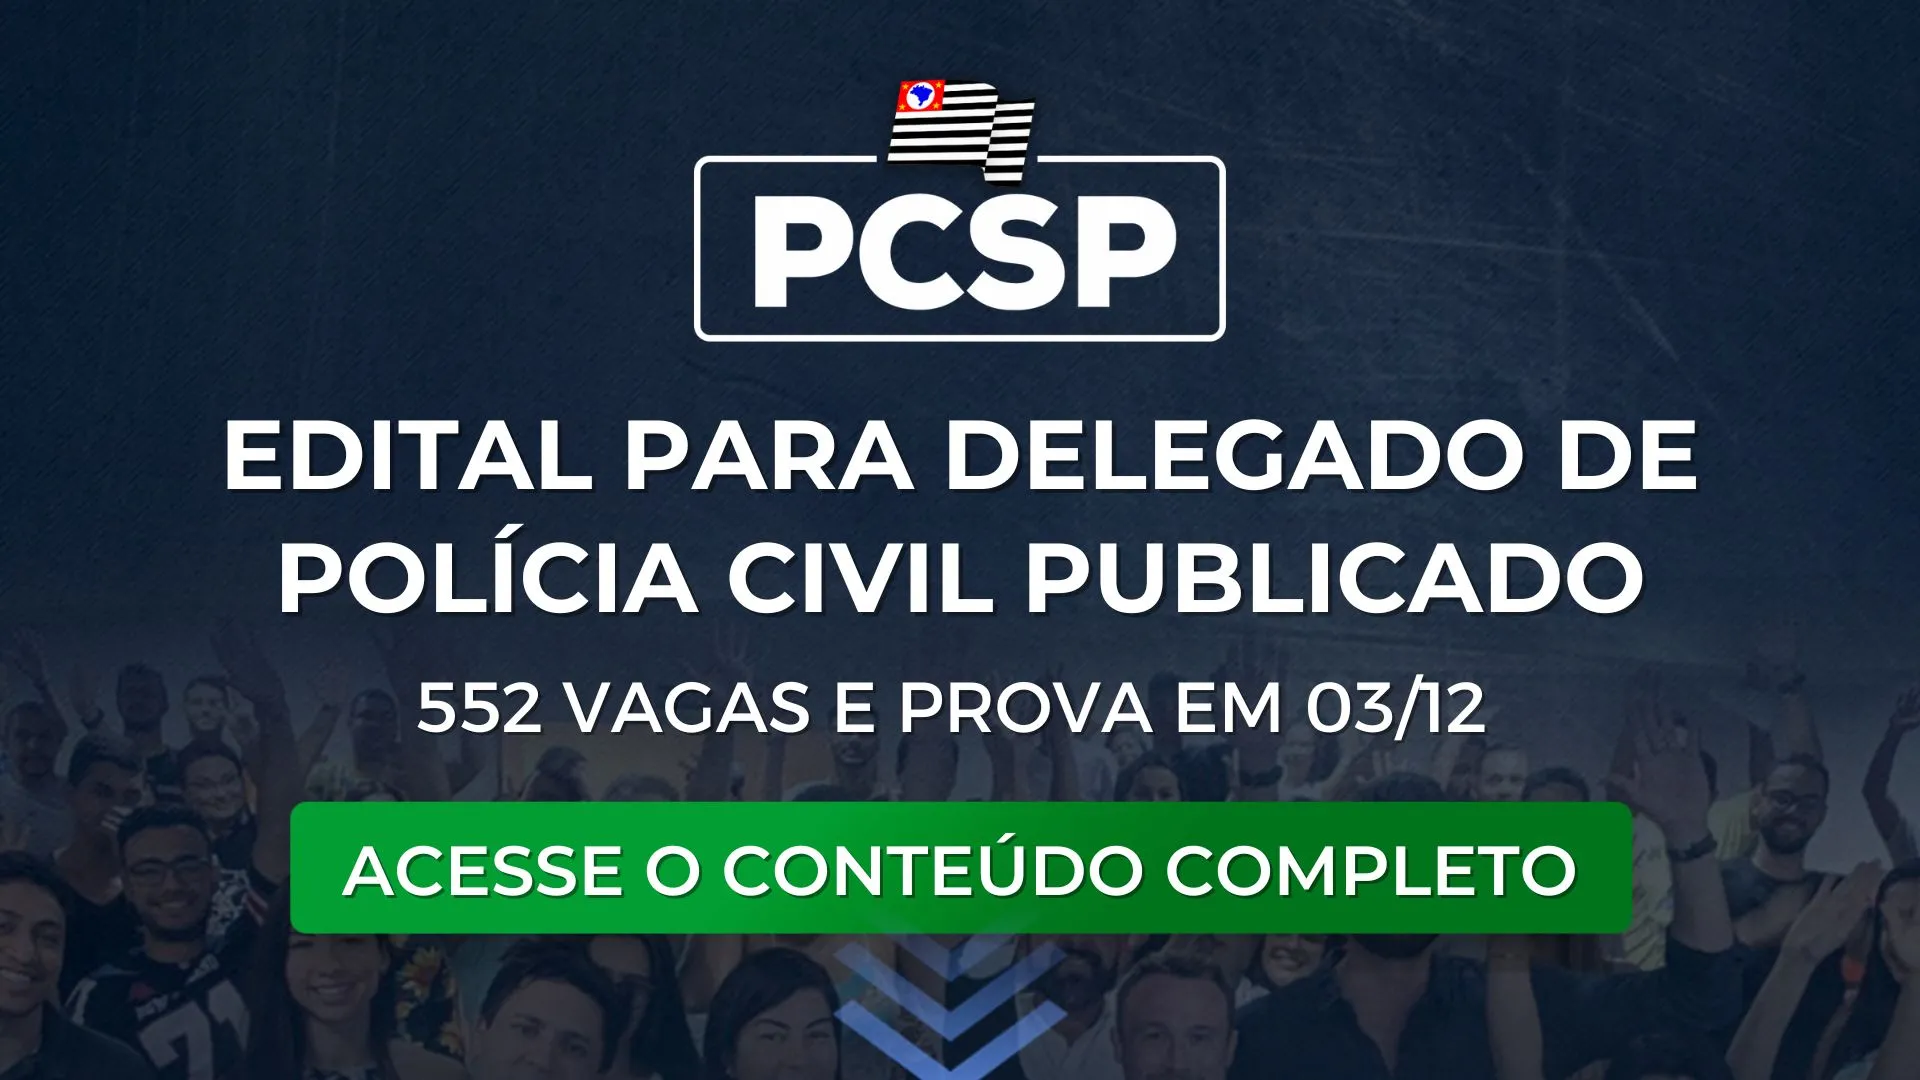 PCSP 2023: Edital publicado para Delegado de Polícia! 552 vagas e prova em 03/12.